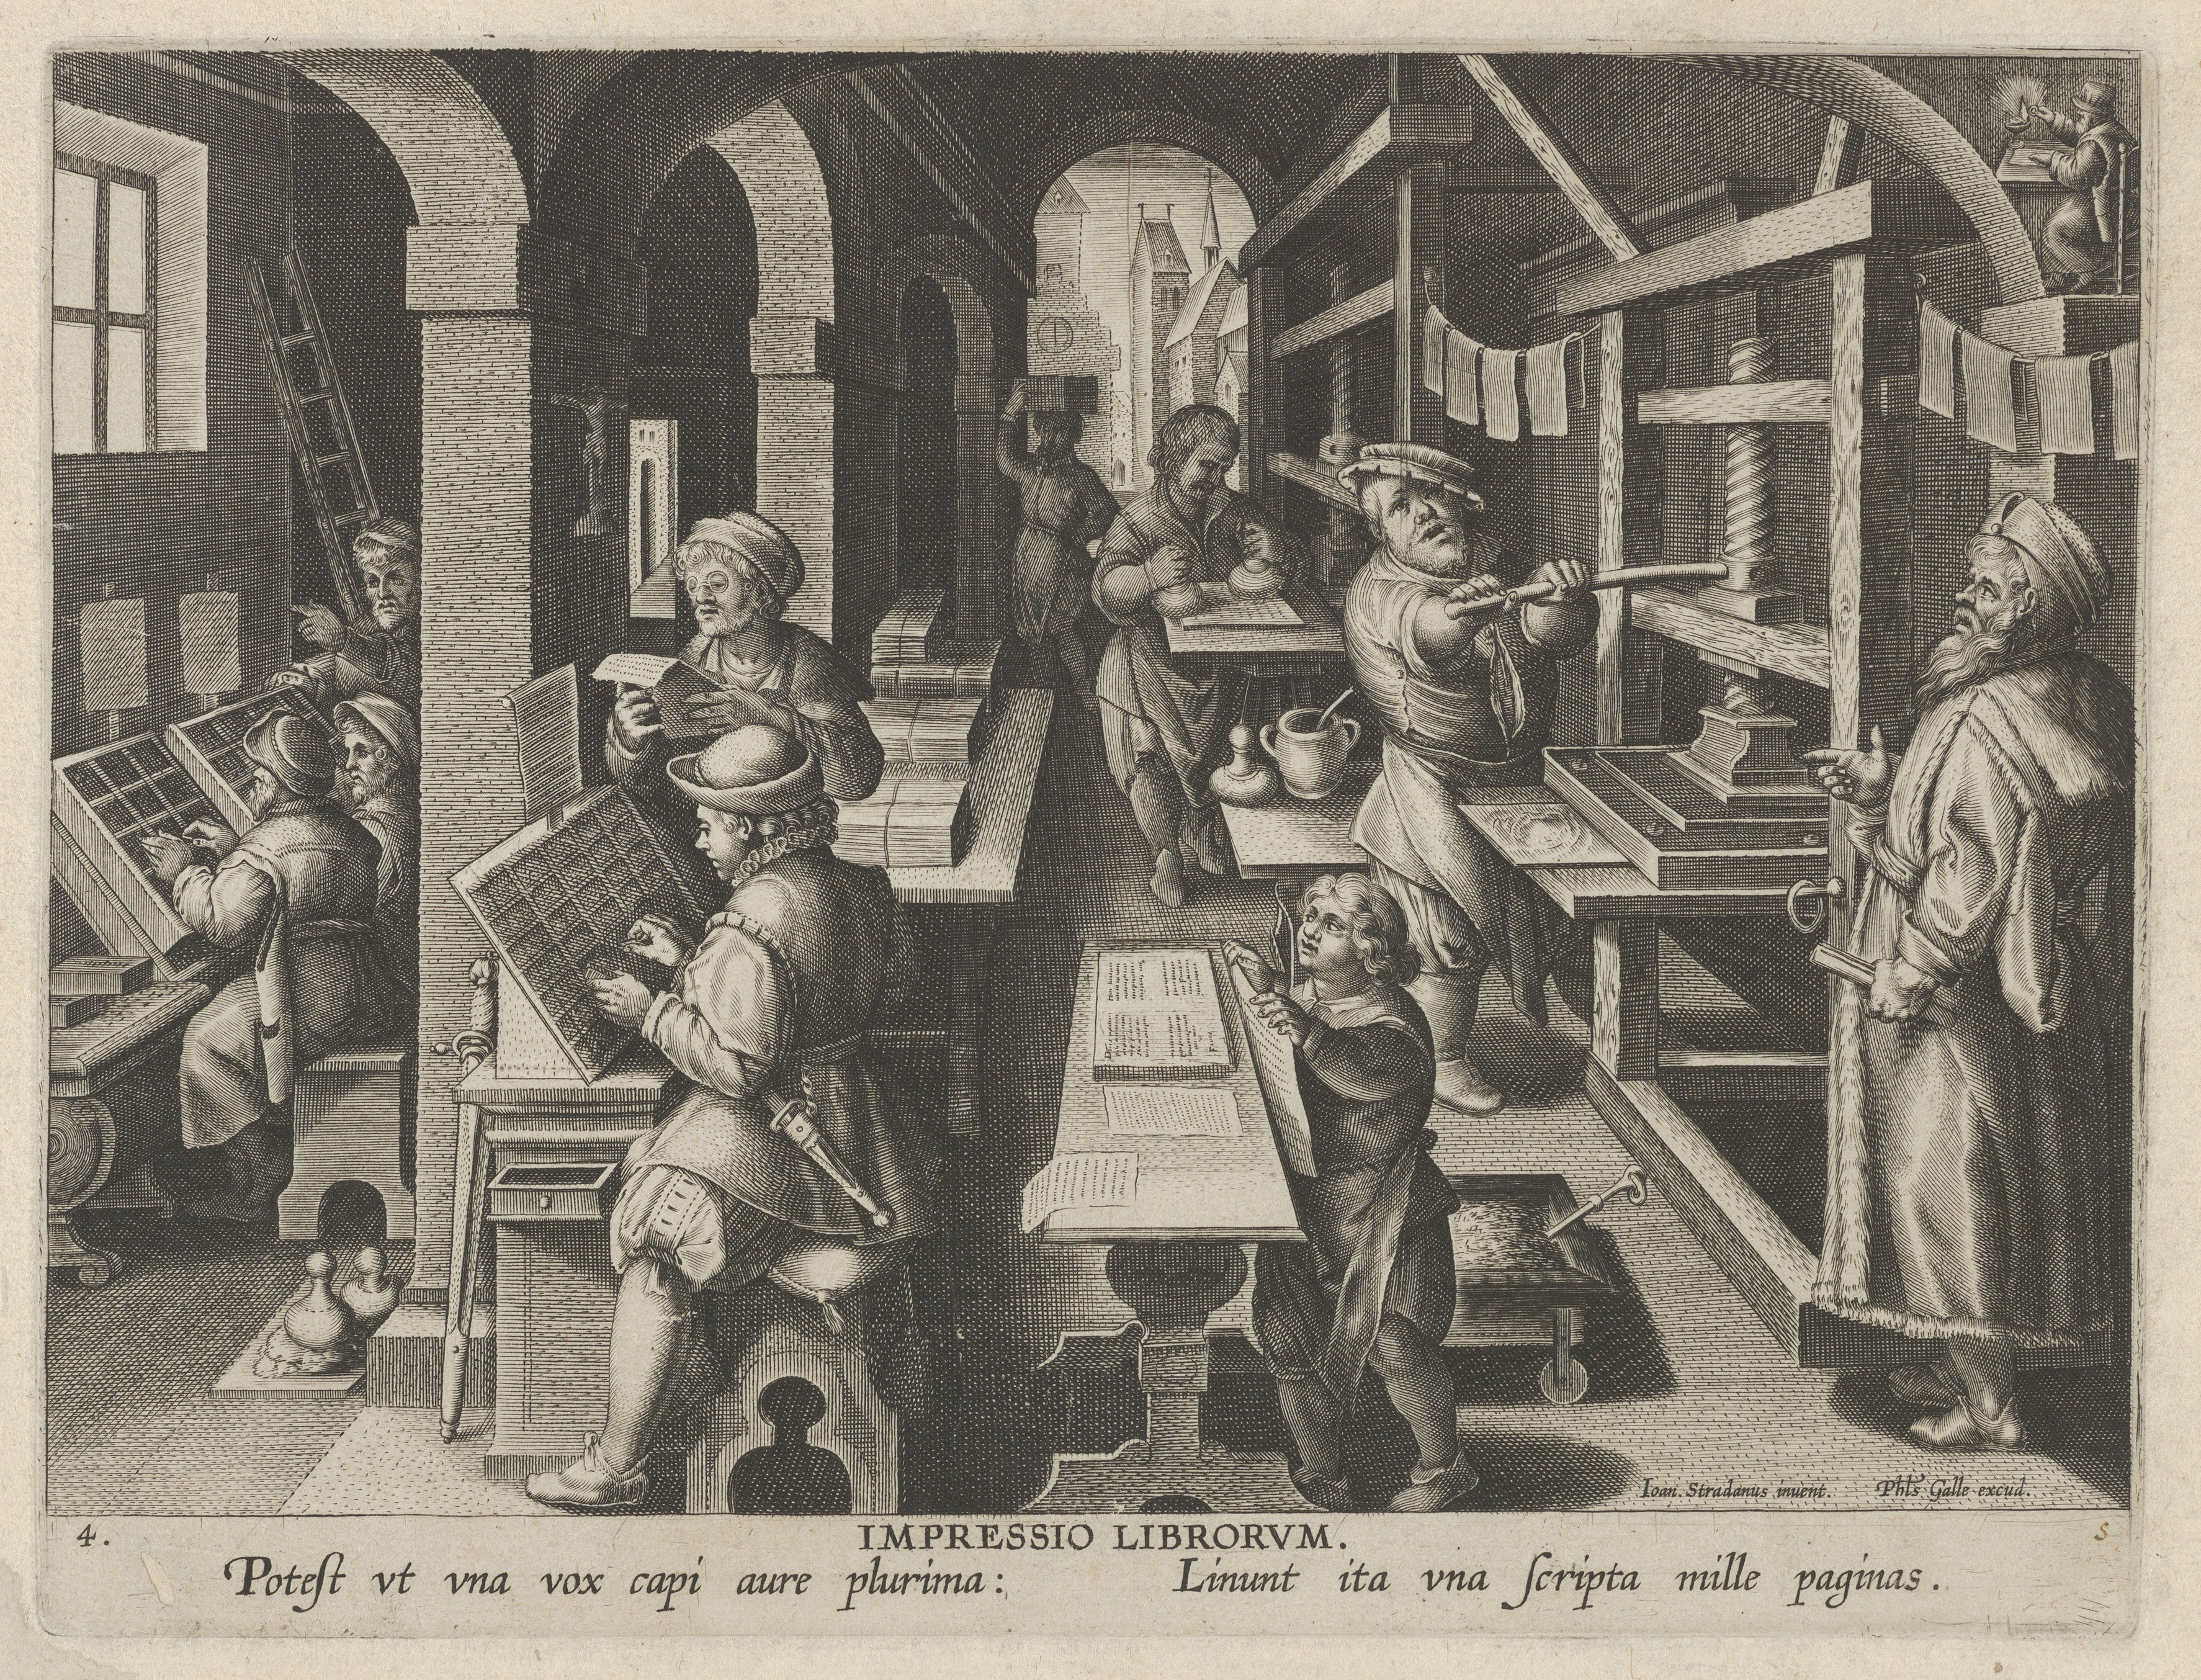 Книга изобретение века. Иоганн Гутенберг гравюра. Иоганн Гутенберг гравюра 16 века. Гутенберг книгопечатание гравюра. Первый печатный станок Гутенберга.